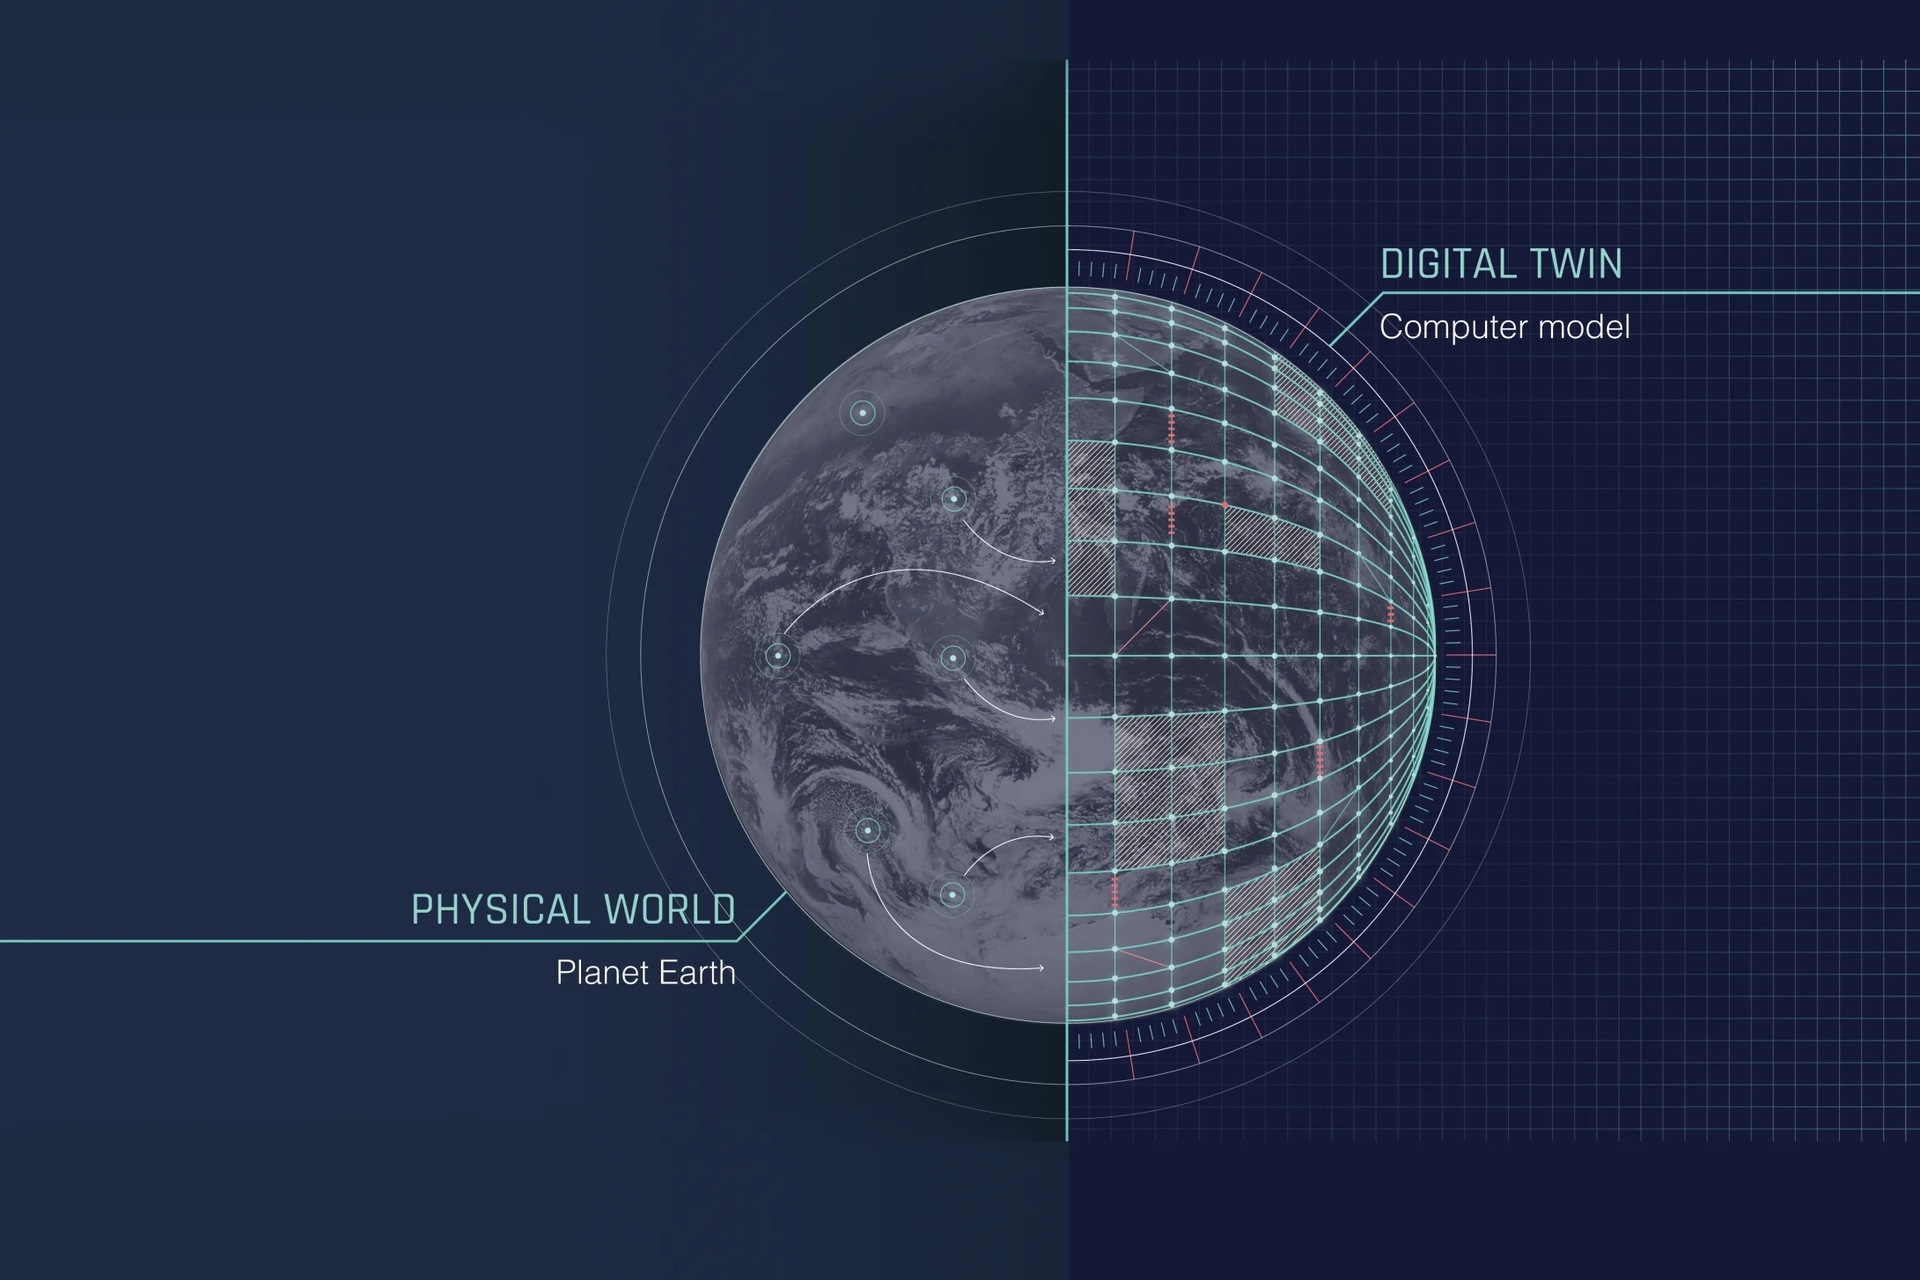 L’ECMWF e il CINECA intendono realizzare un gemello digitale della Terra